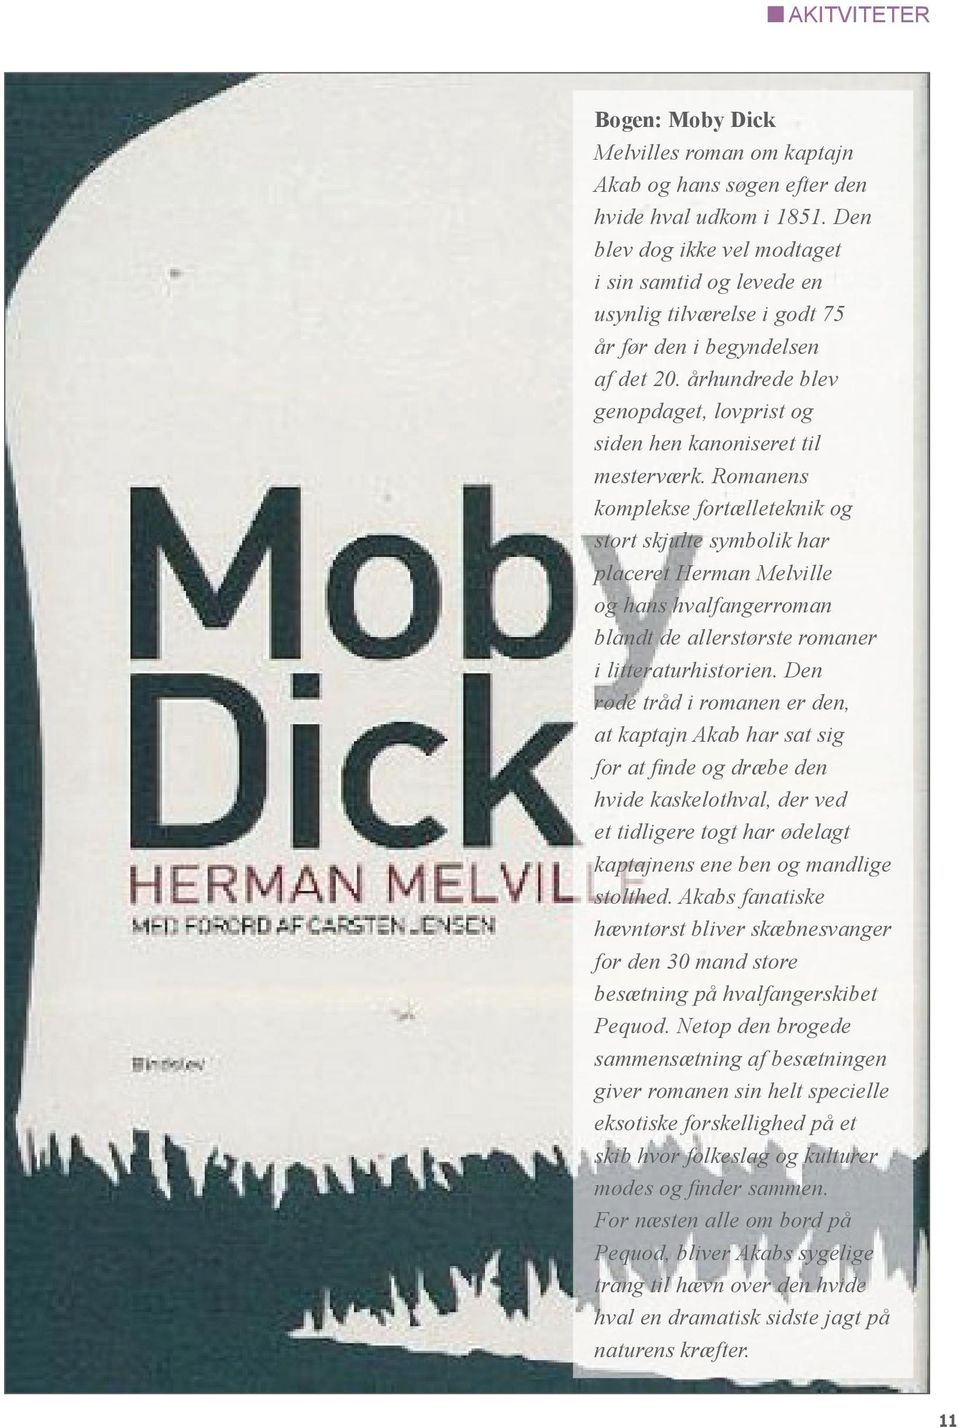 Romanens komplekse fortælleteknik og stort skjulte symbolik har placeret Herman Melville og hans hvalfangerroman blandt de allerstørste romaner i litteraturhistorien.